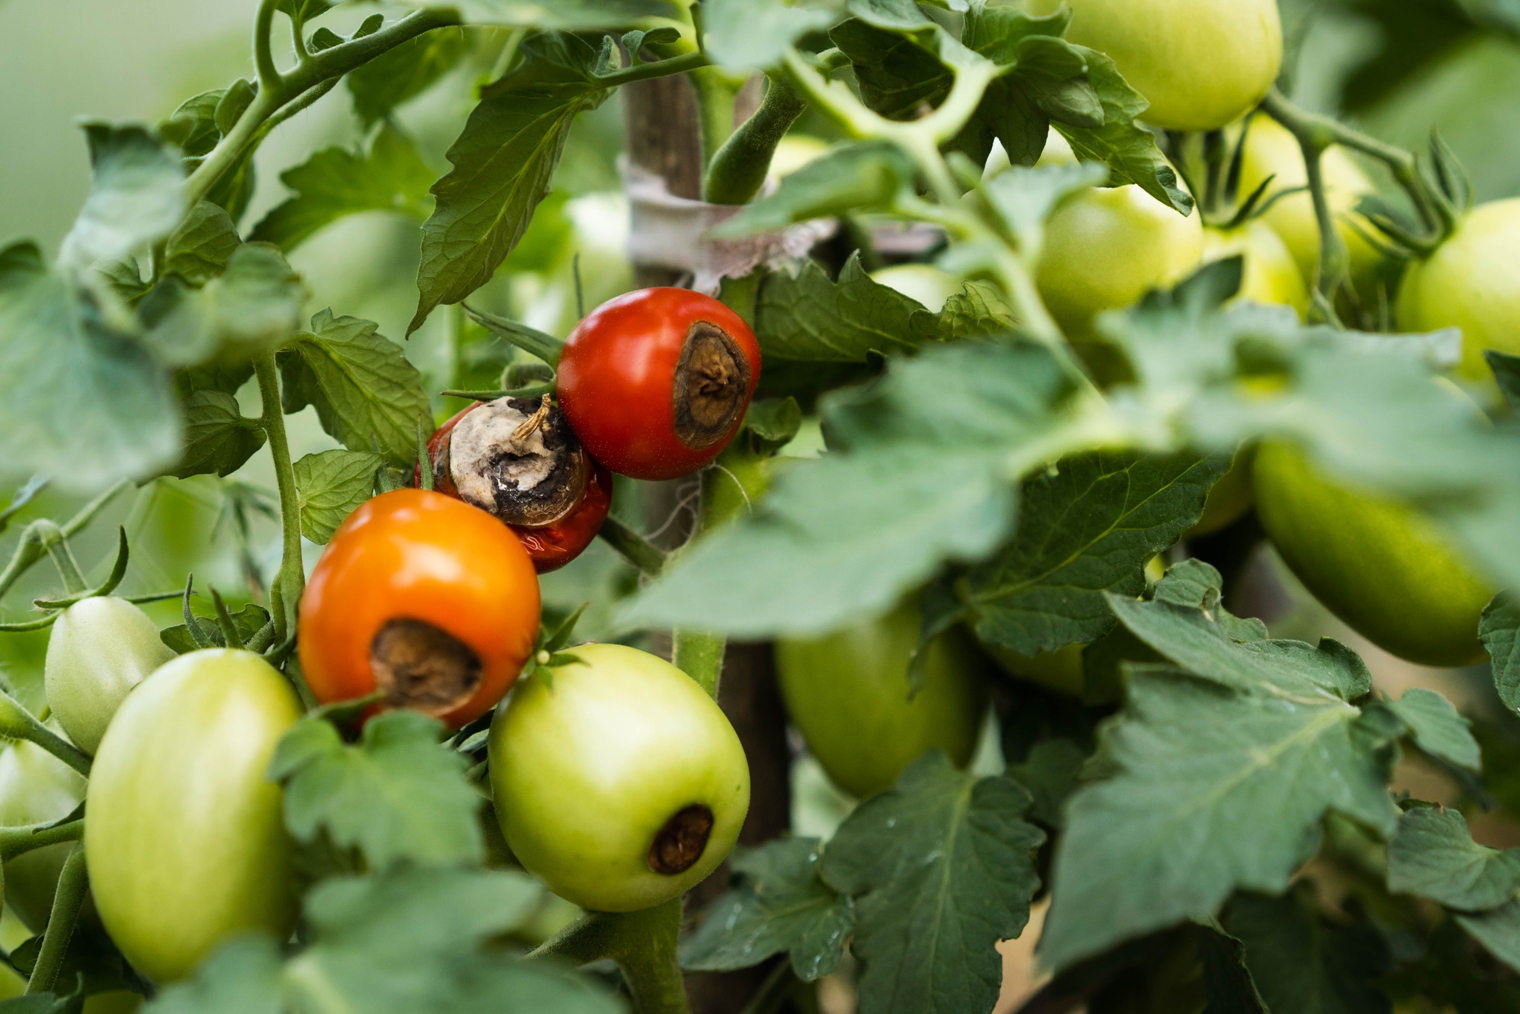 Вершинная гниль на помидорах. Такая проблема бывает и на кабачках. Фотография: Uryupina Nadezhda / Shutterstock / FOTODOM